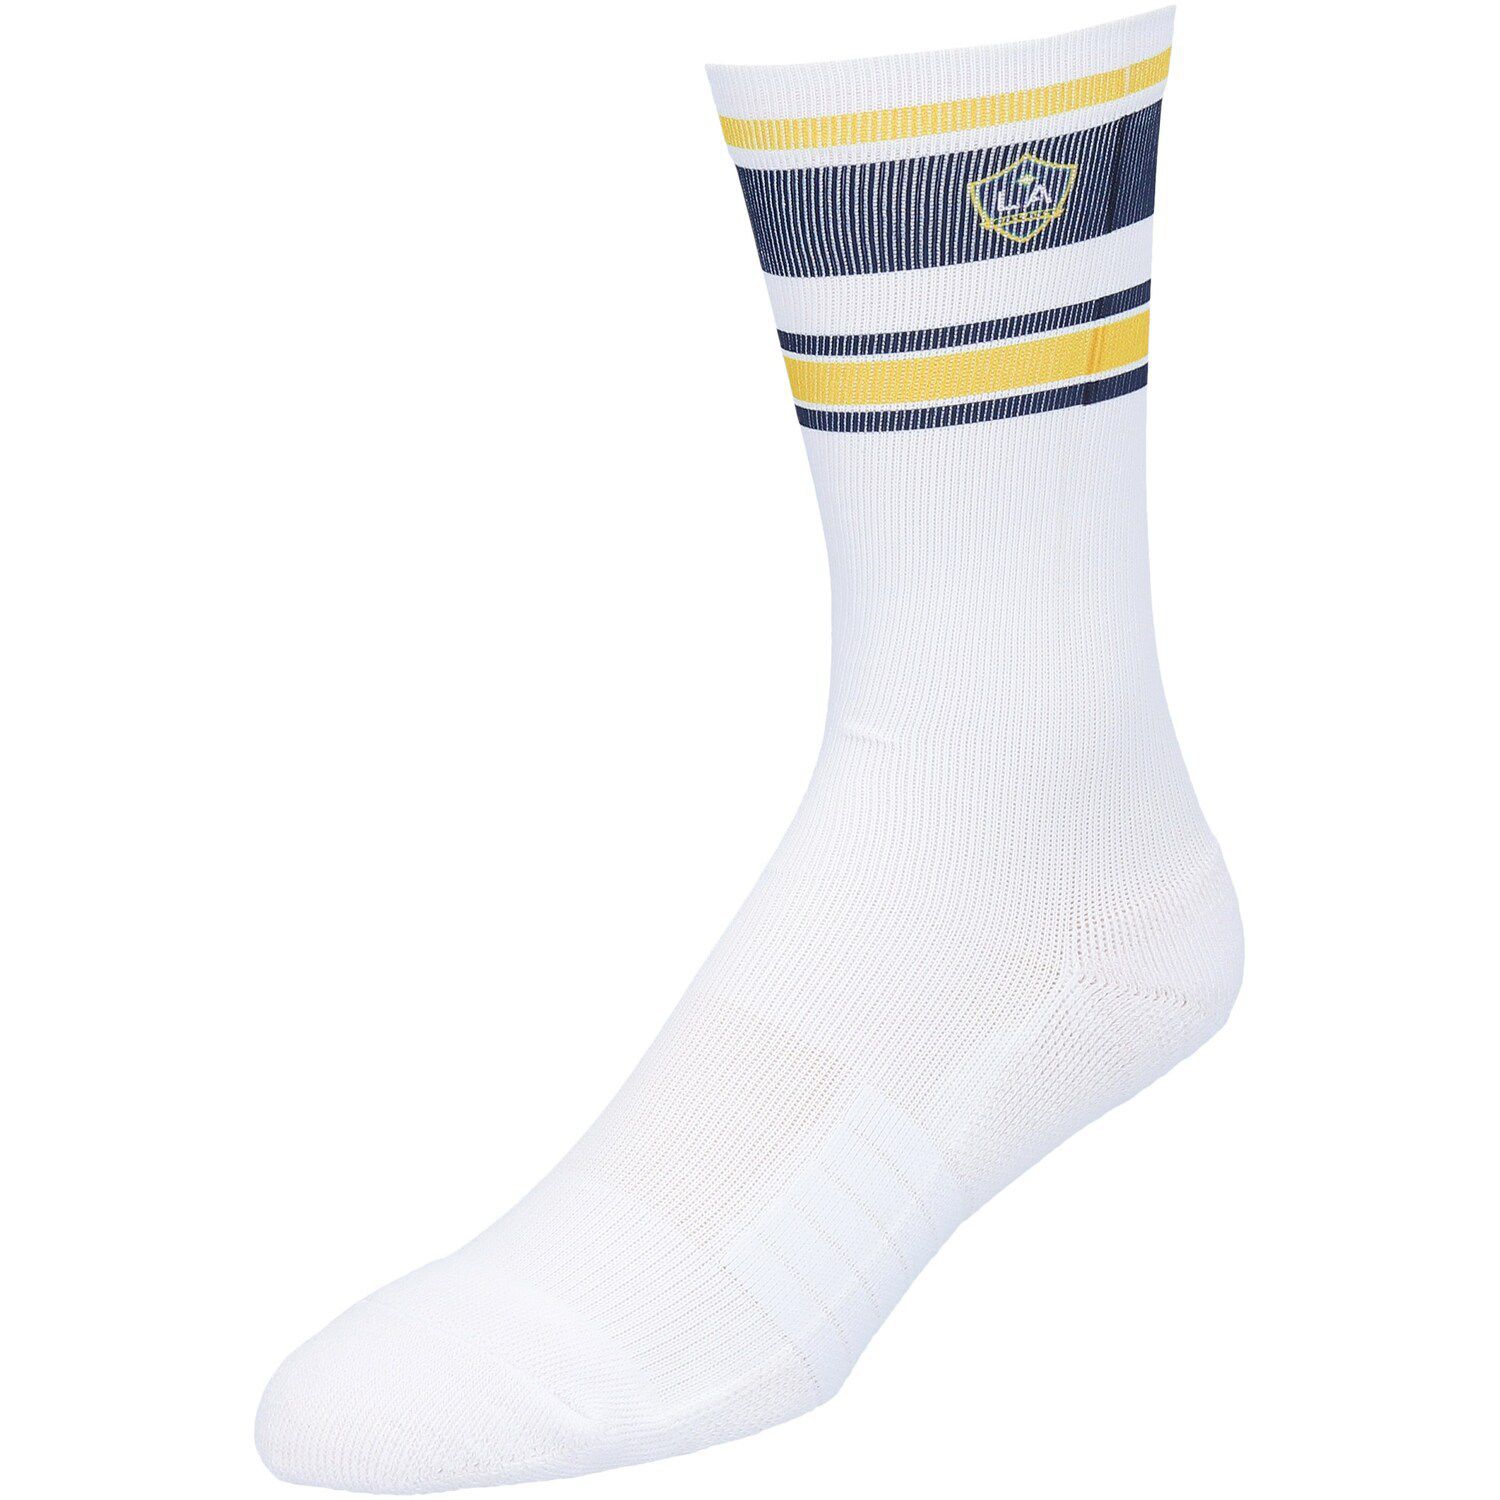 Image for Unbranded Men's Strideline LA Galaxy Team Premium Retro Socks at Kohl's.